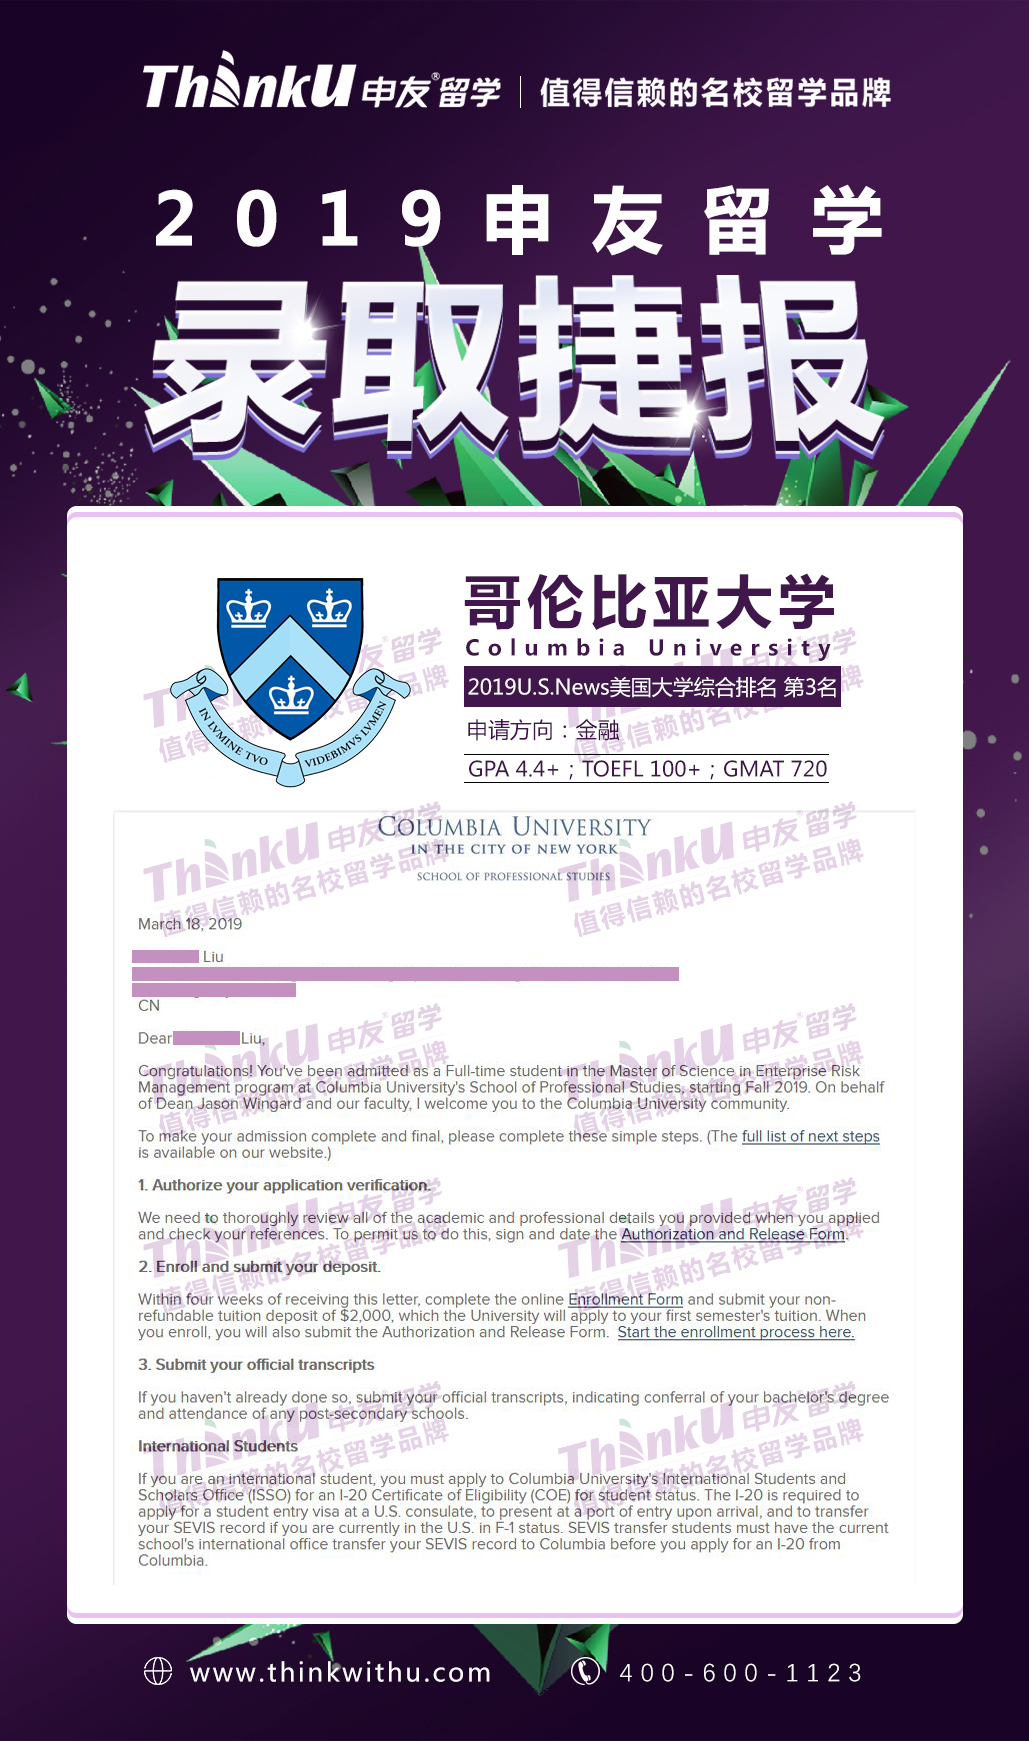 同济大学-刘同学-哥伦比亚大学Master of Science in Enterprise Risk Management offer.jpg